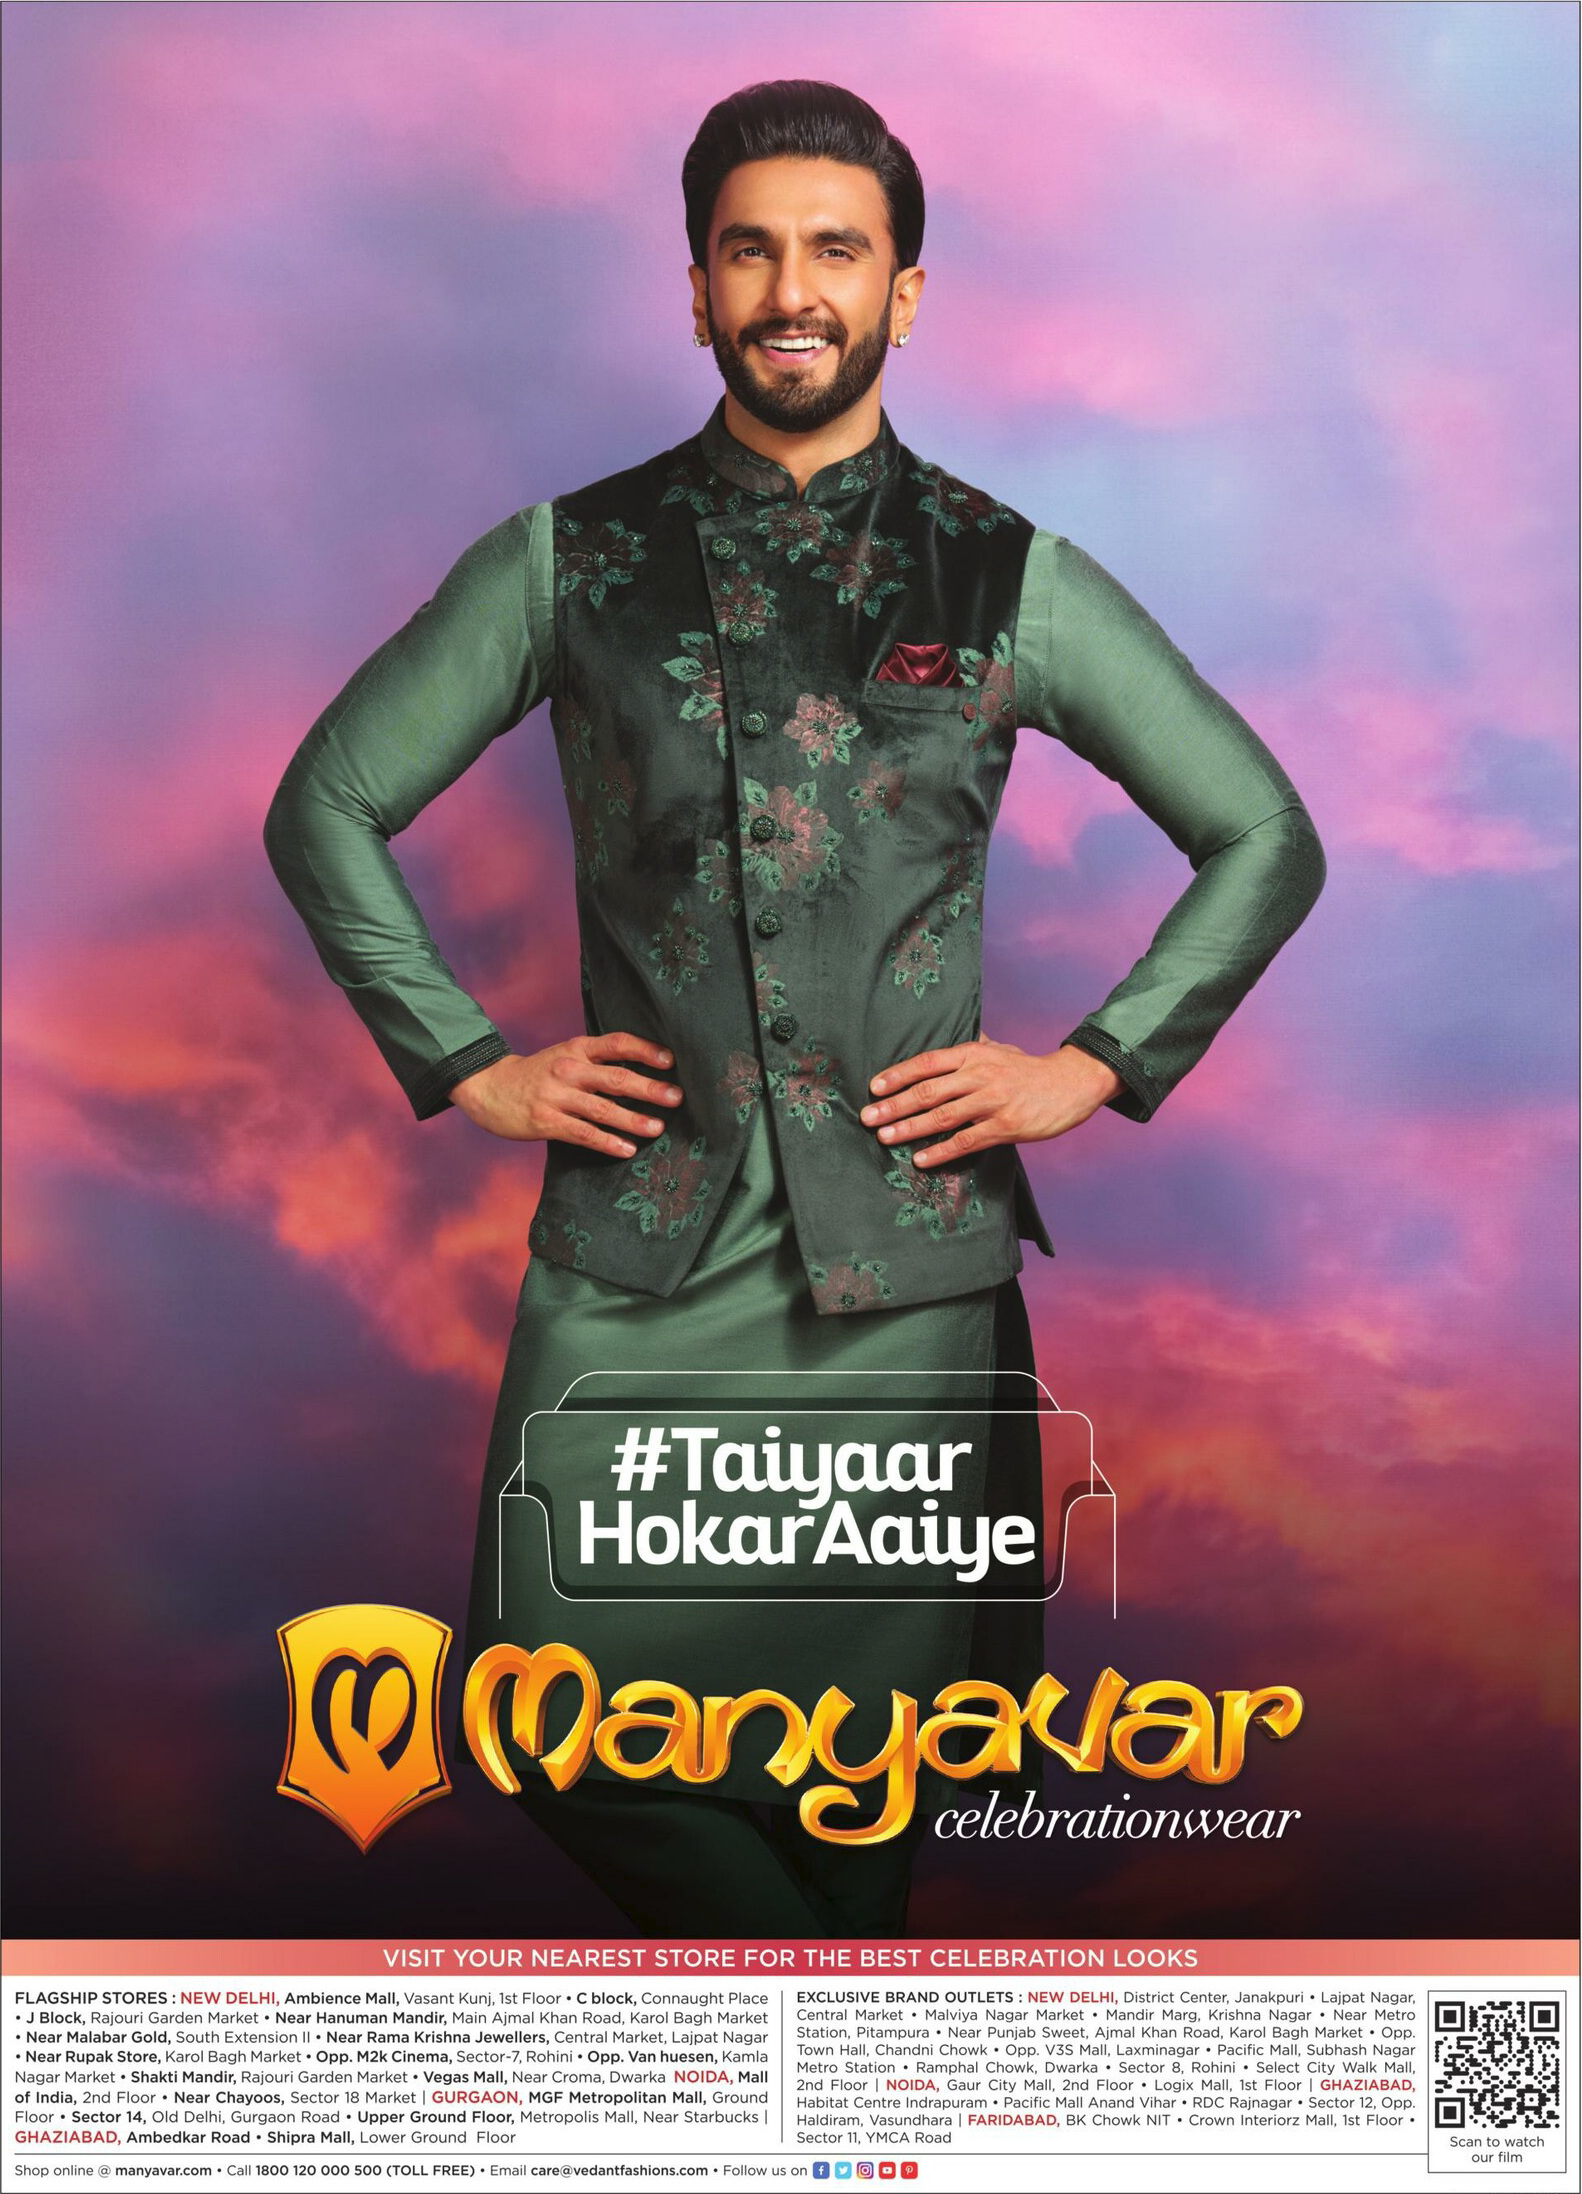 Manyavar advertisement featuring Ranveer Singh